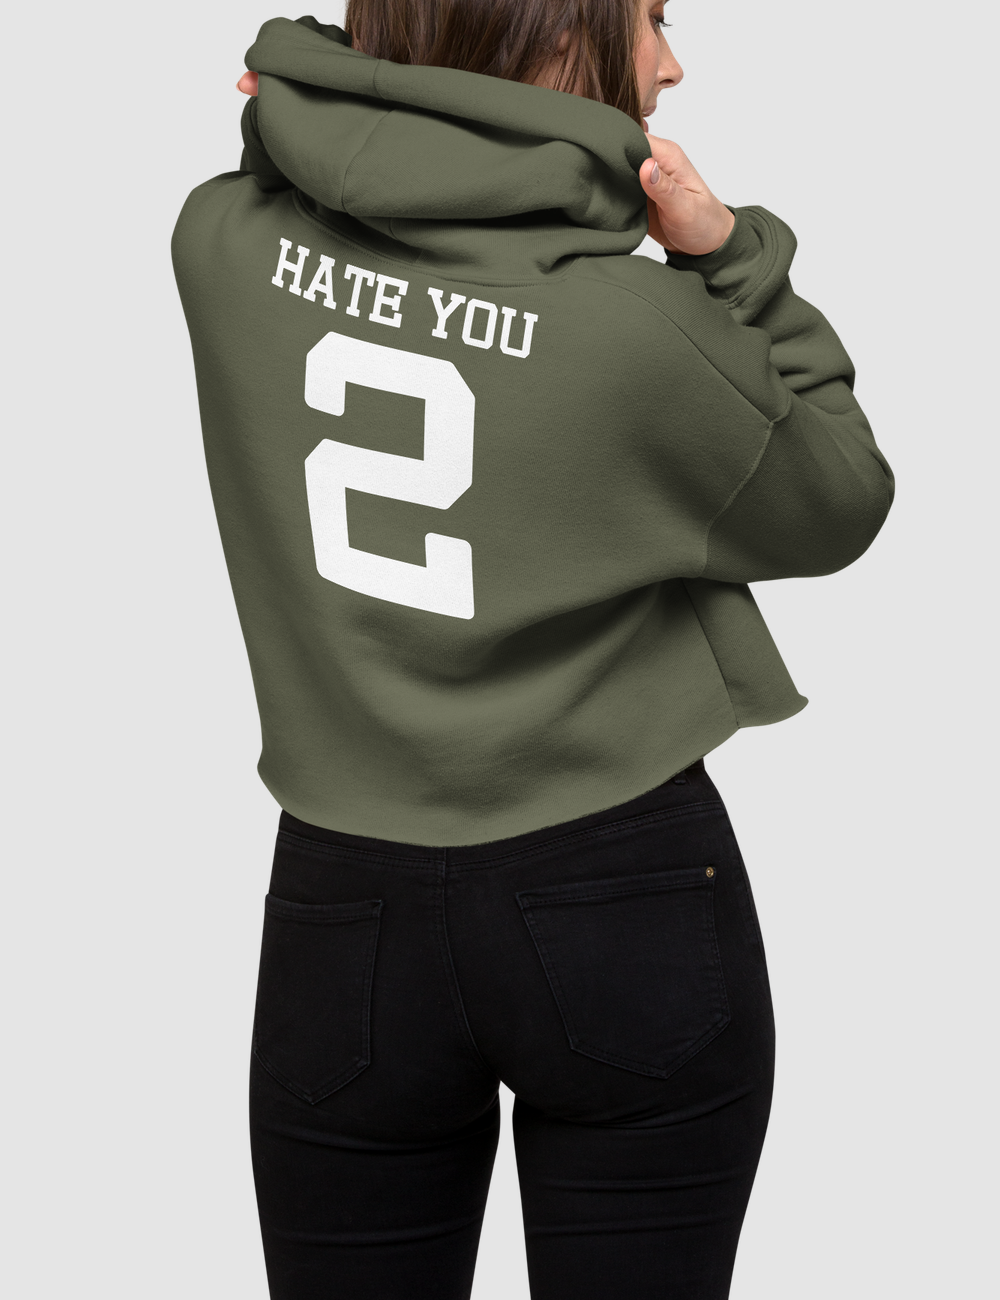 Hate you 2 | Back Print Crop Hoodie OniTakai